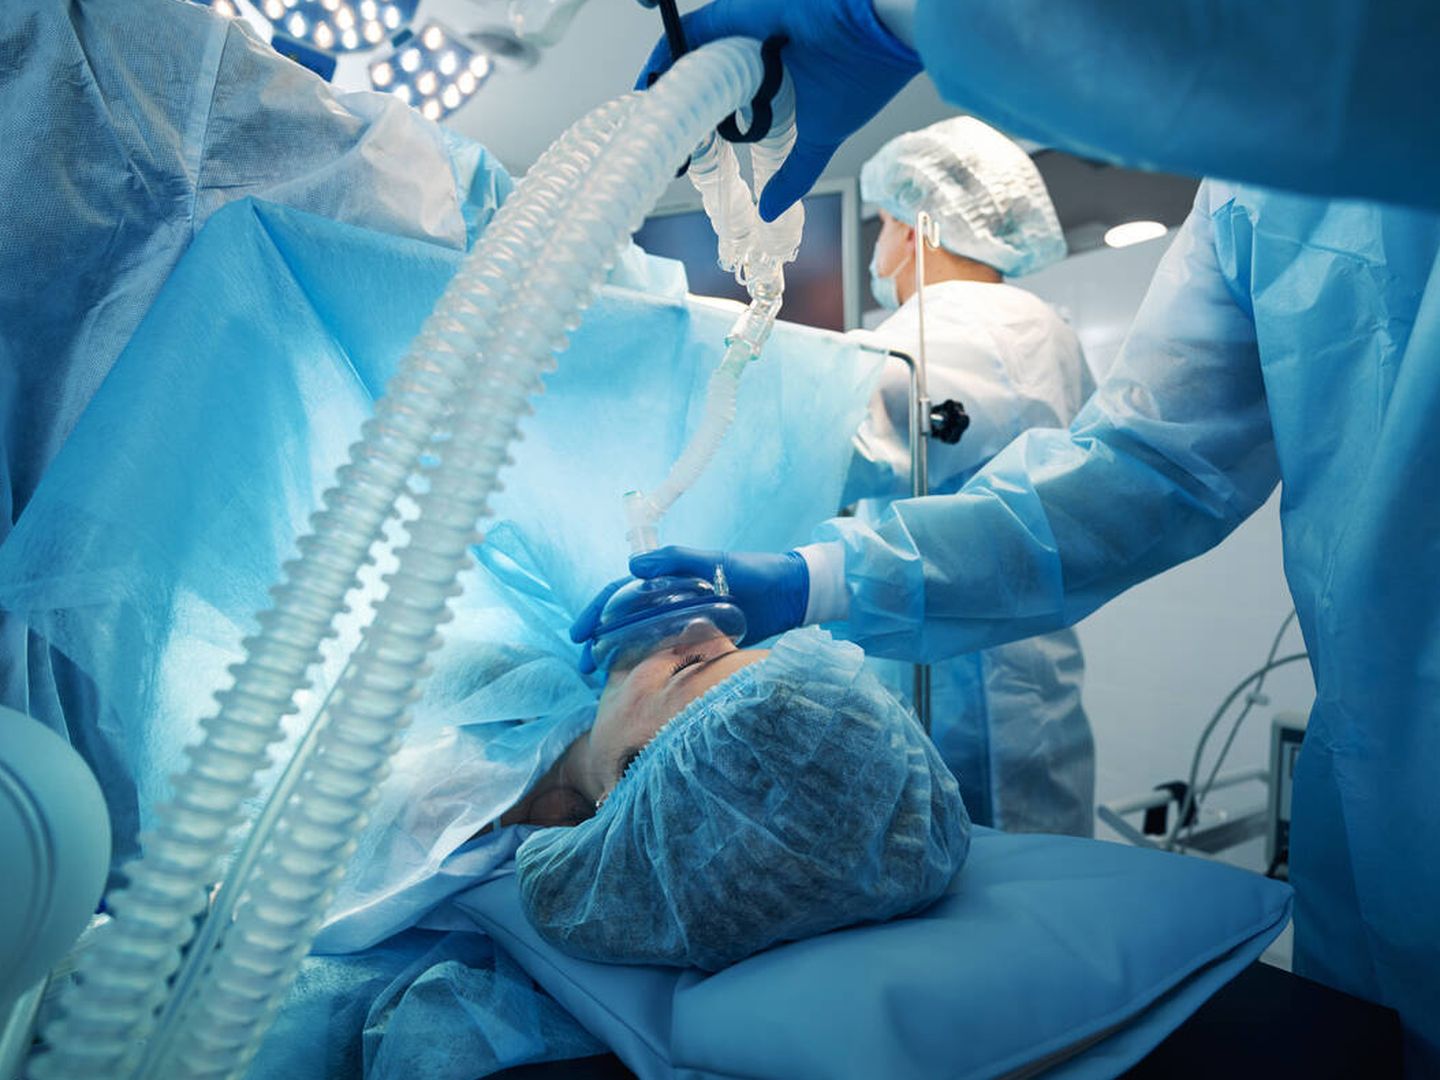 El manejo de la anestesia ha cambiado mucho en los últimos años. (iStock)